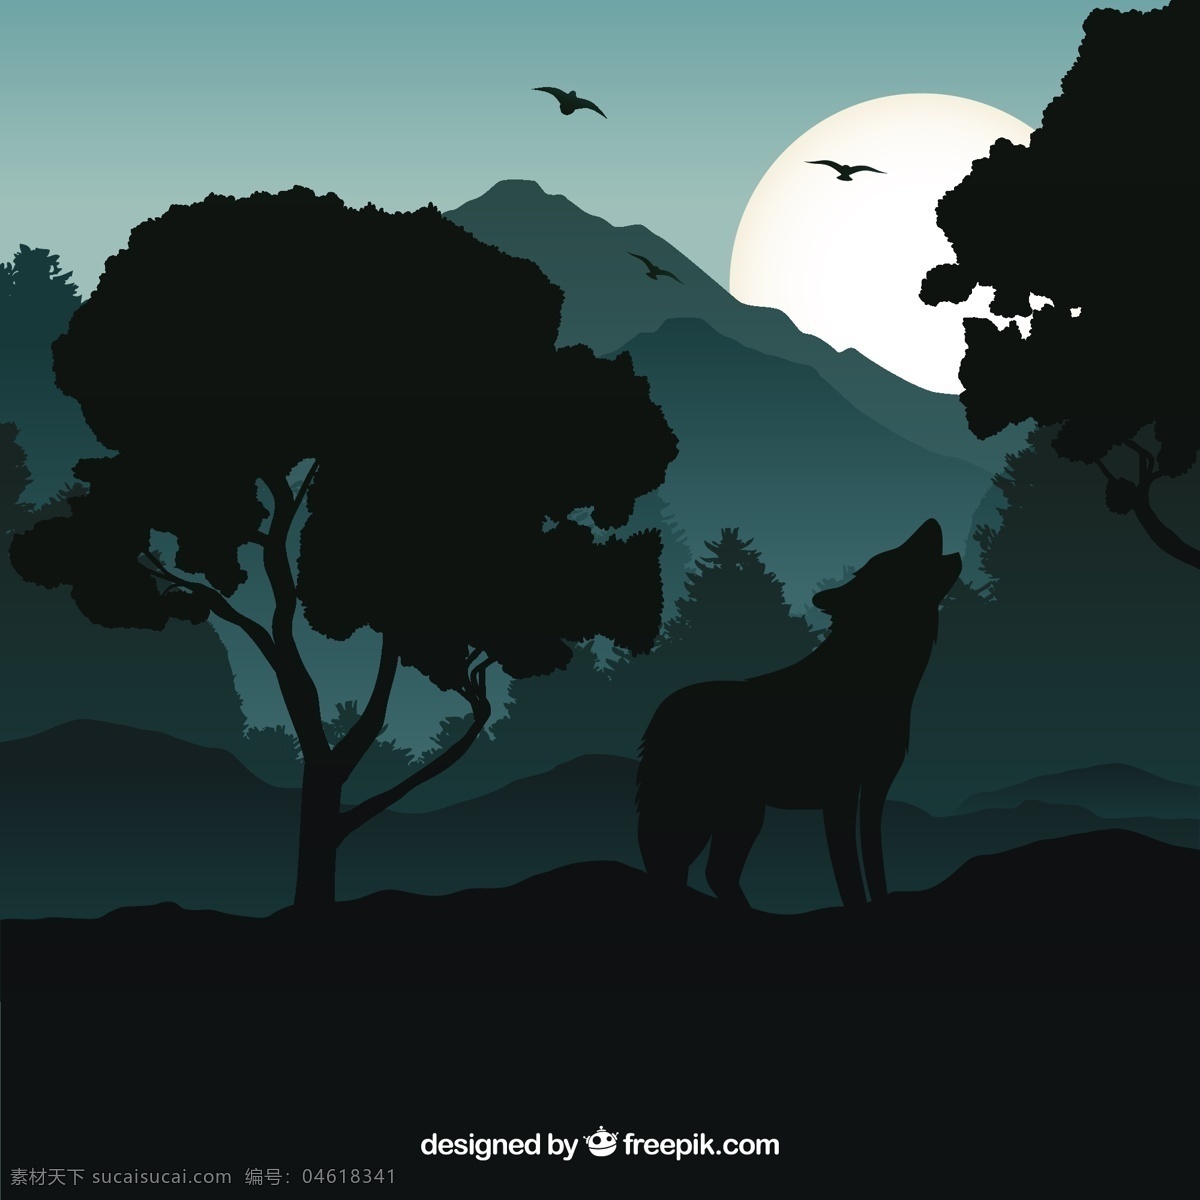 保 鲁夫 背景 夜间 嚎叫 自然 动物 风景 月亮 剪影 夜晚 狼 野生 动物剪影 猎人 野生动物 食肉动物